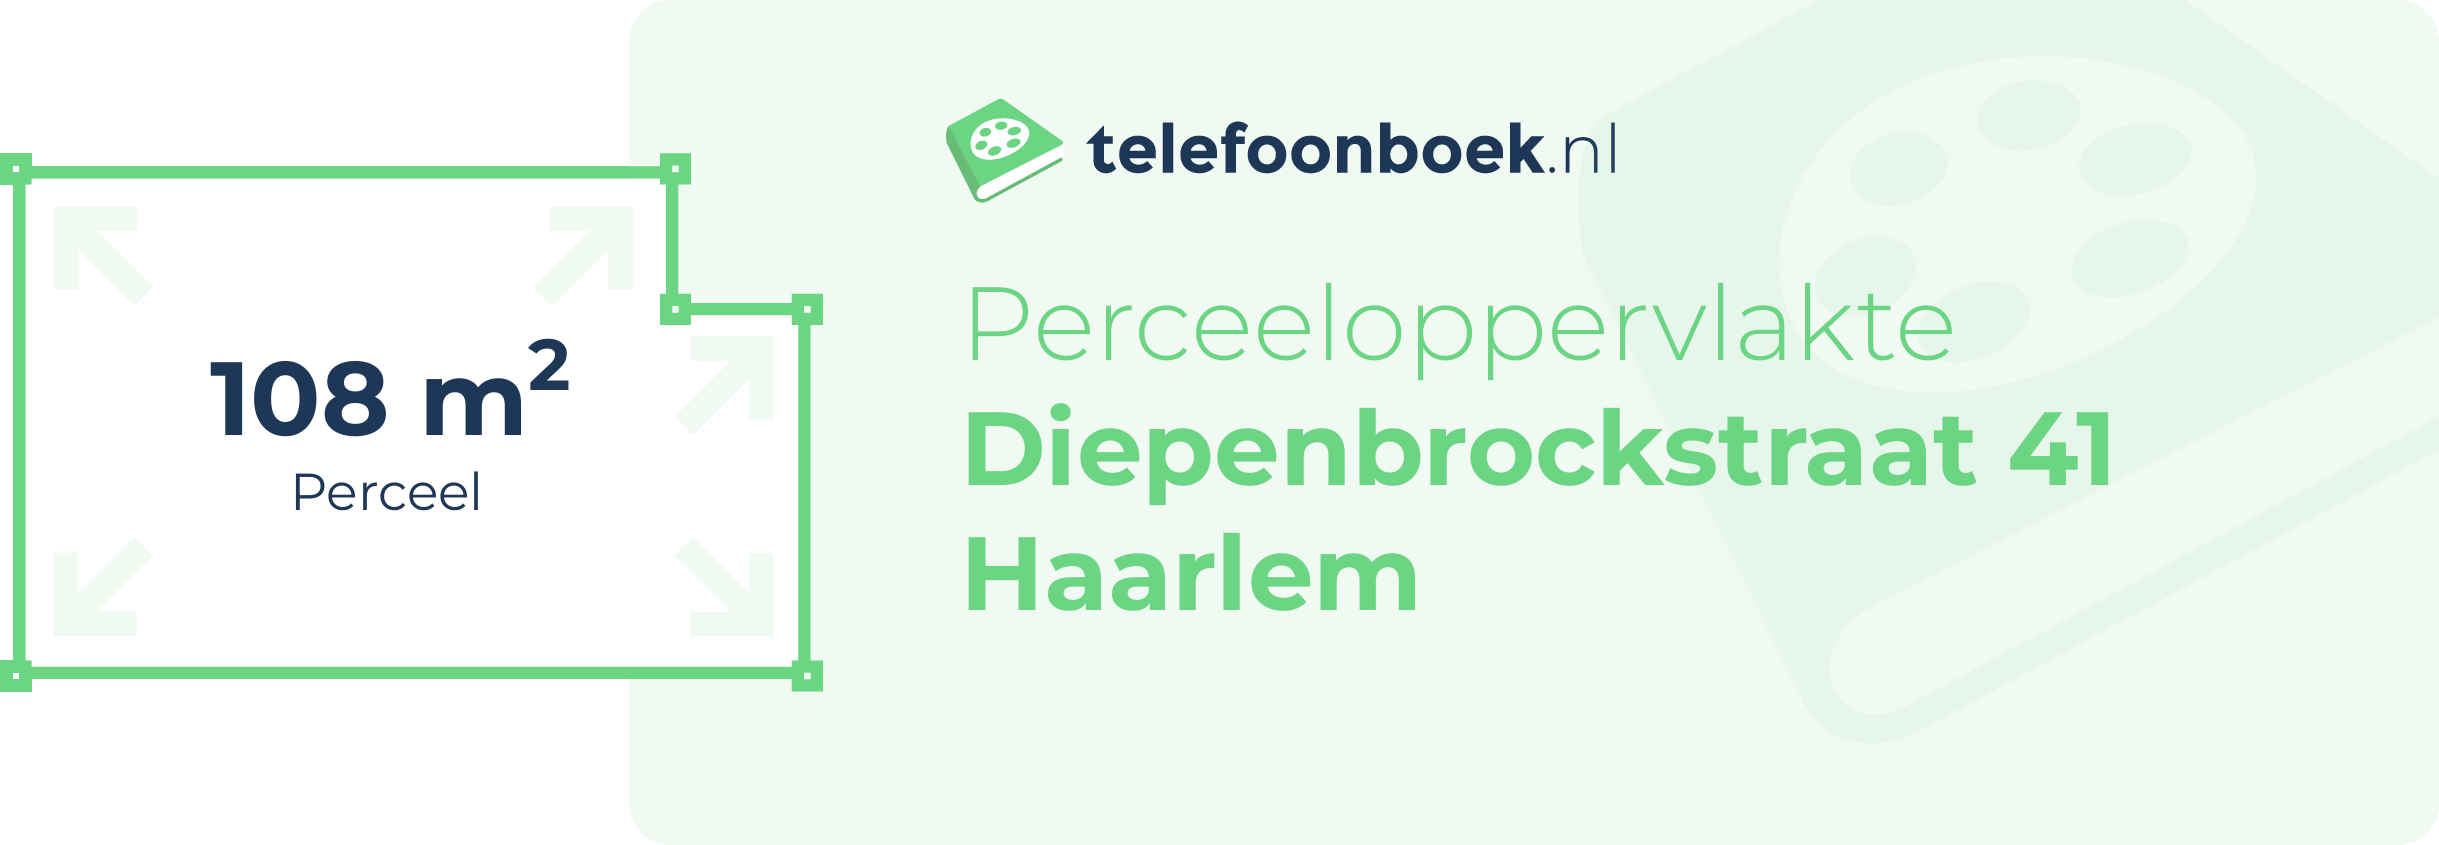 Perceeloppervlakte Diepenbrockstraat 41 Haarlem